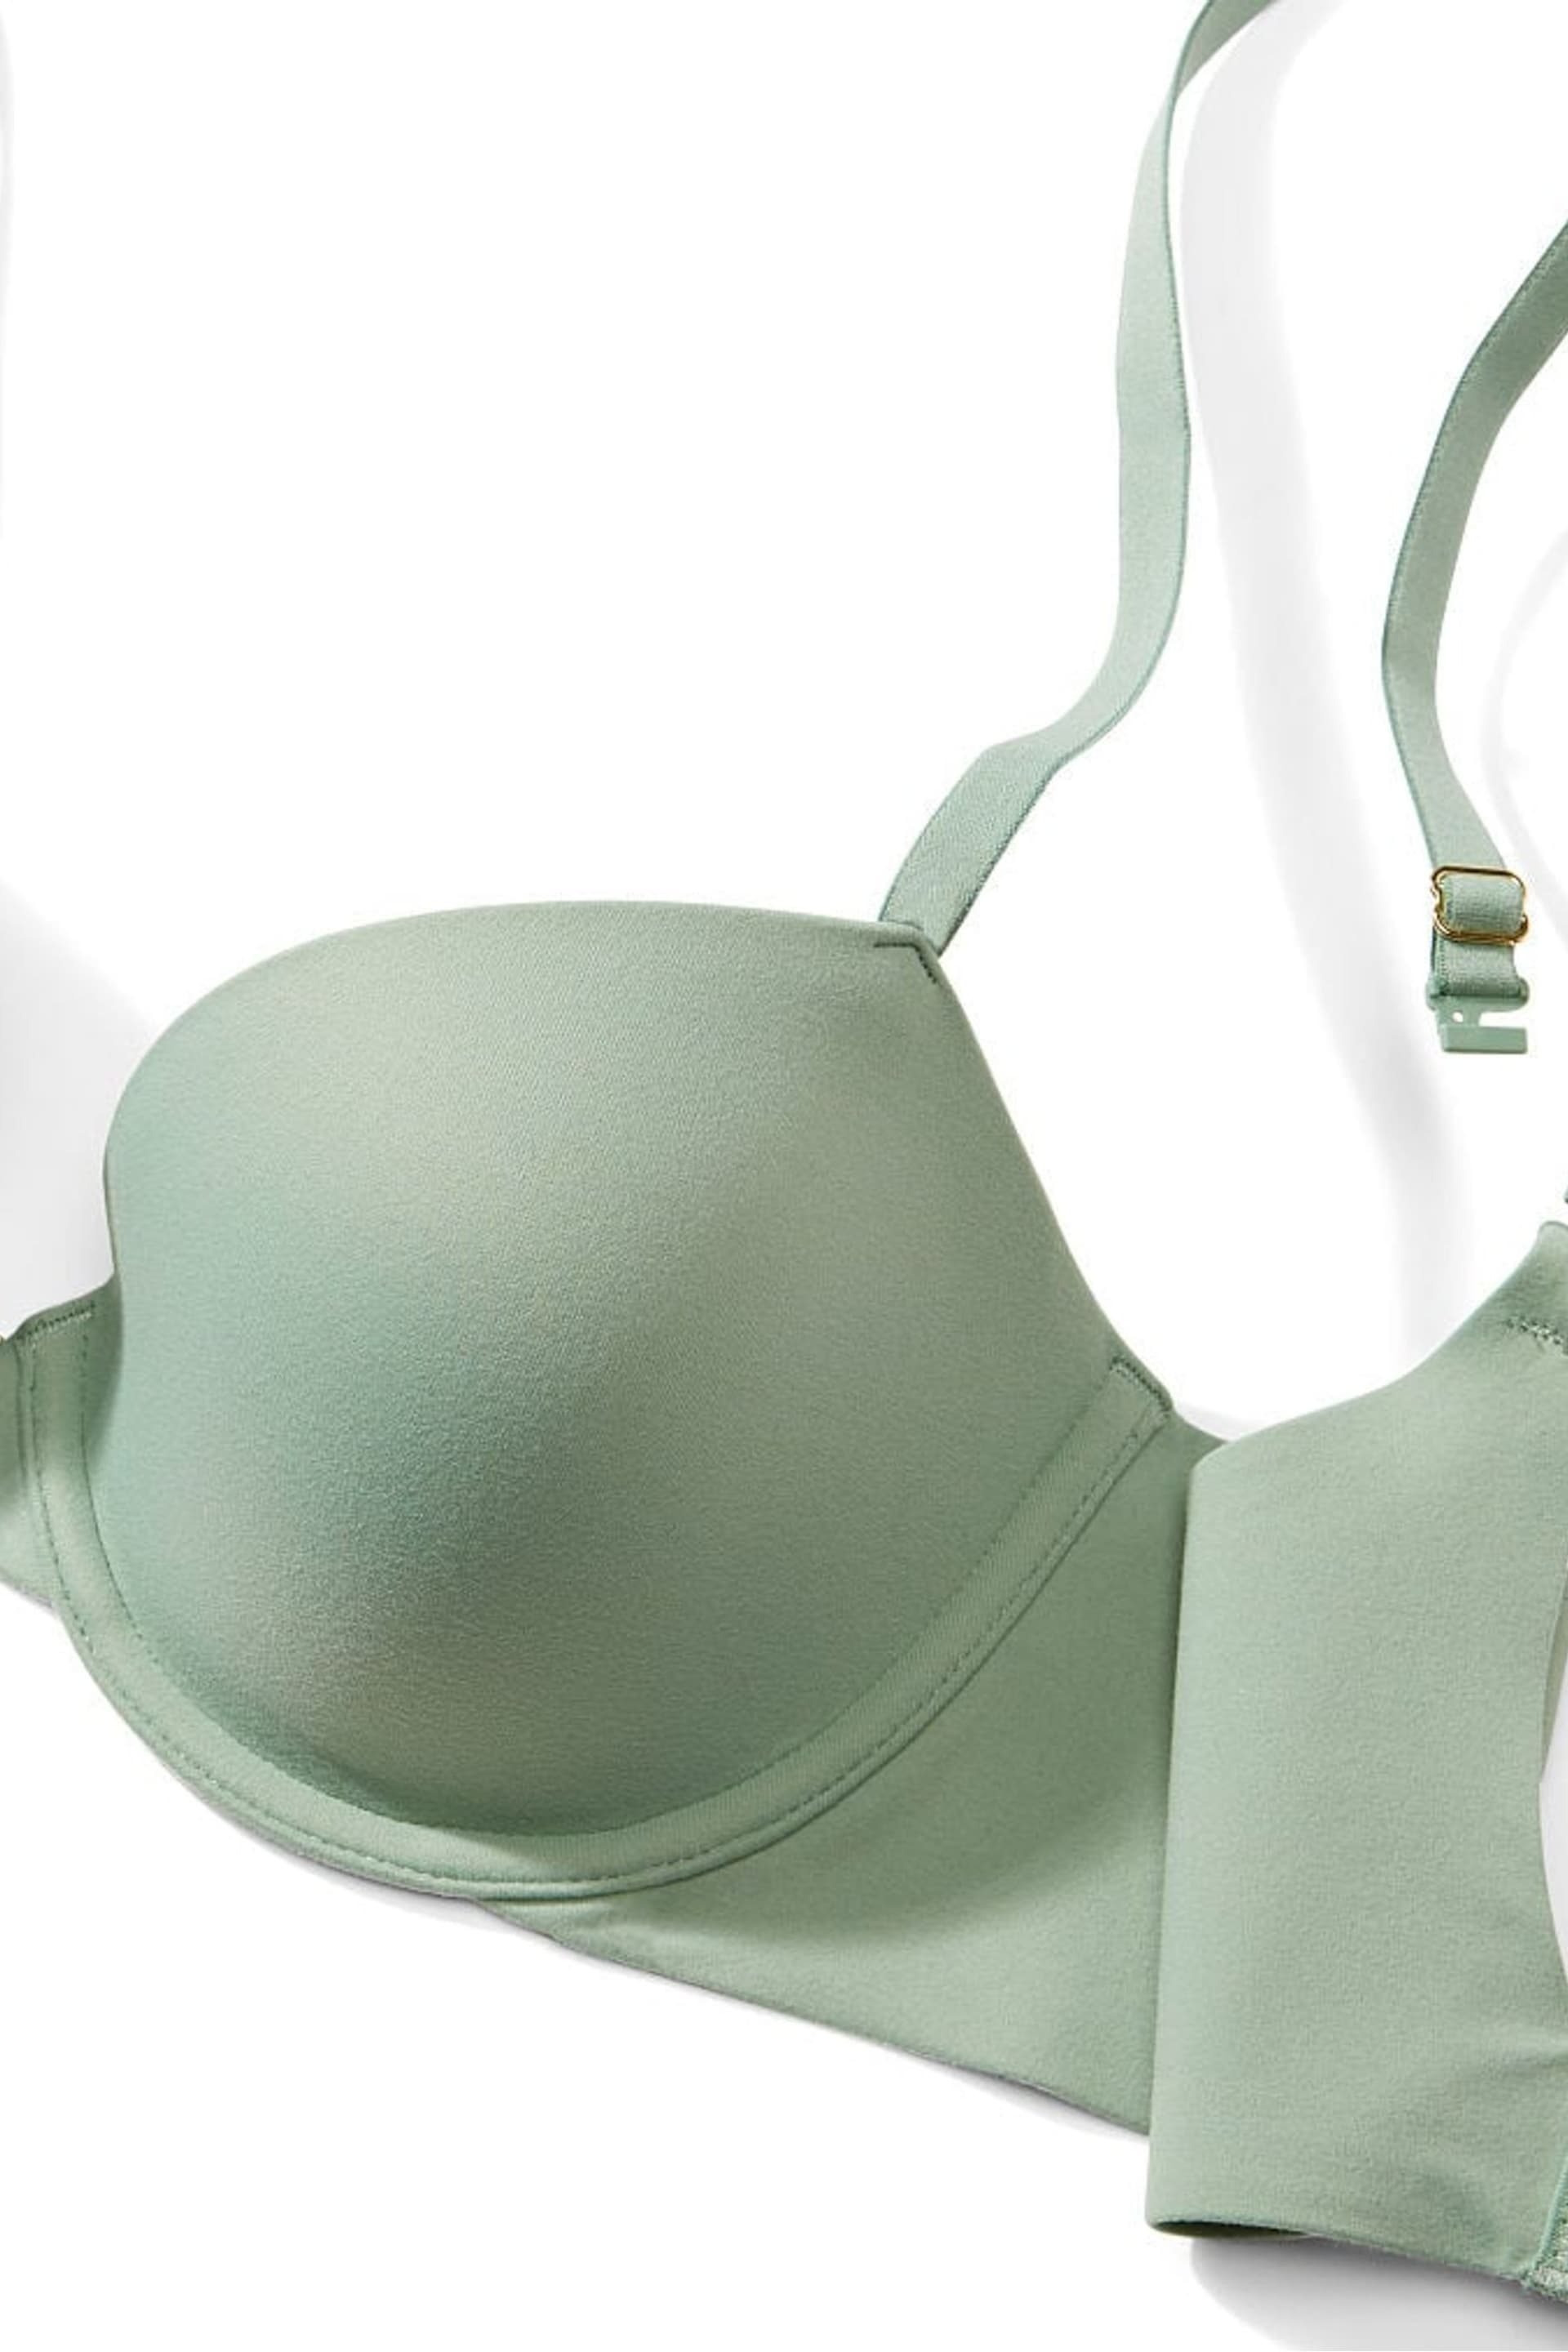 Victoria's Secret Seasalt Green Lightly Lined Demi Bra - Image 4 of 4